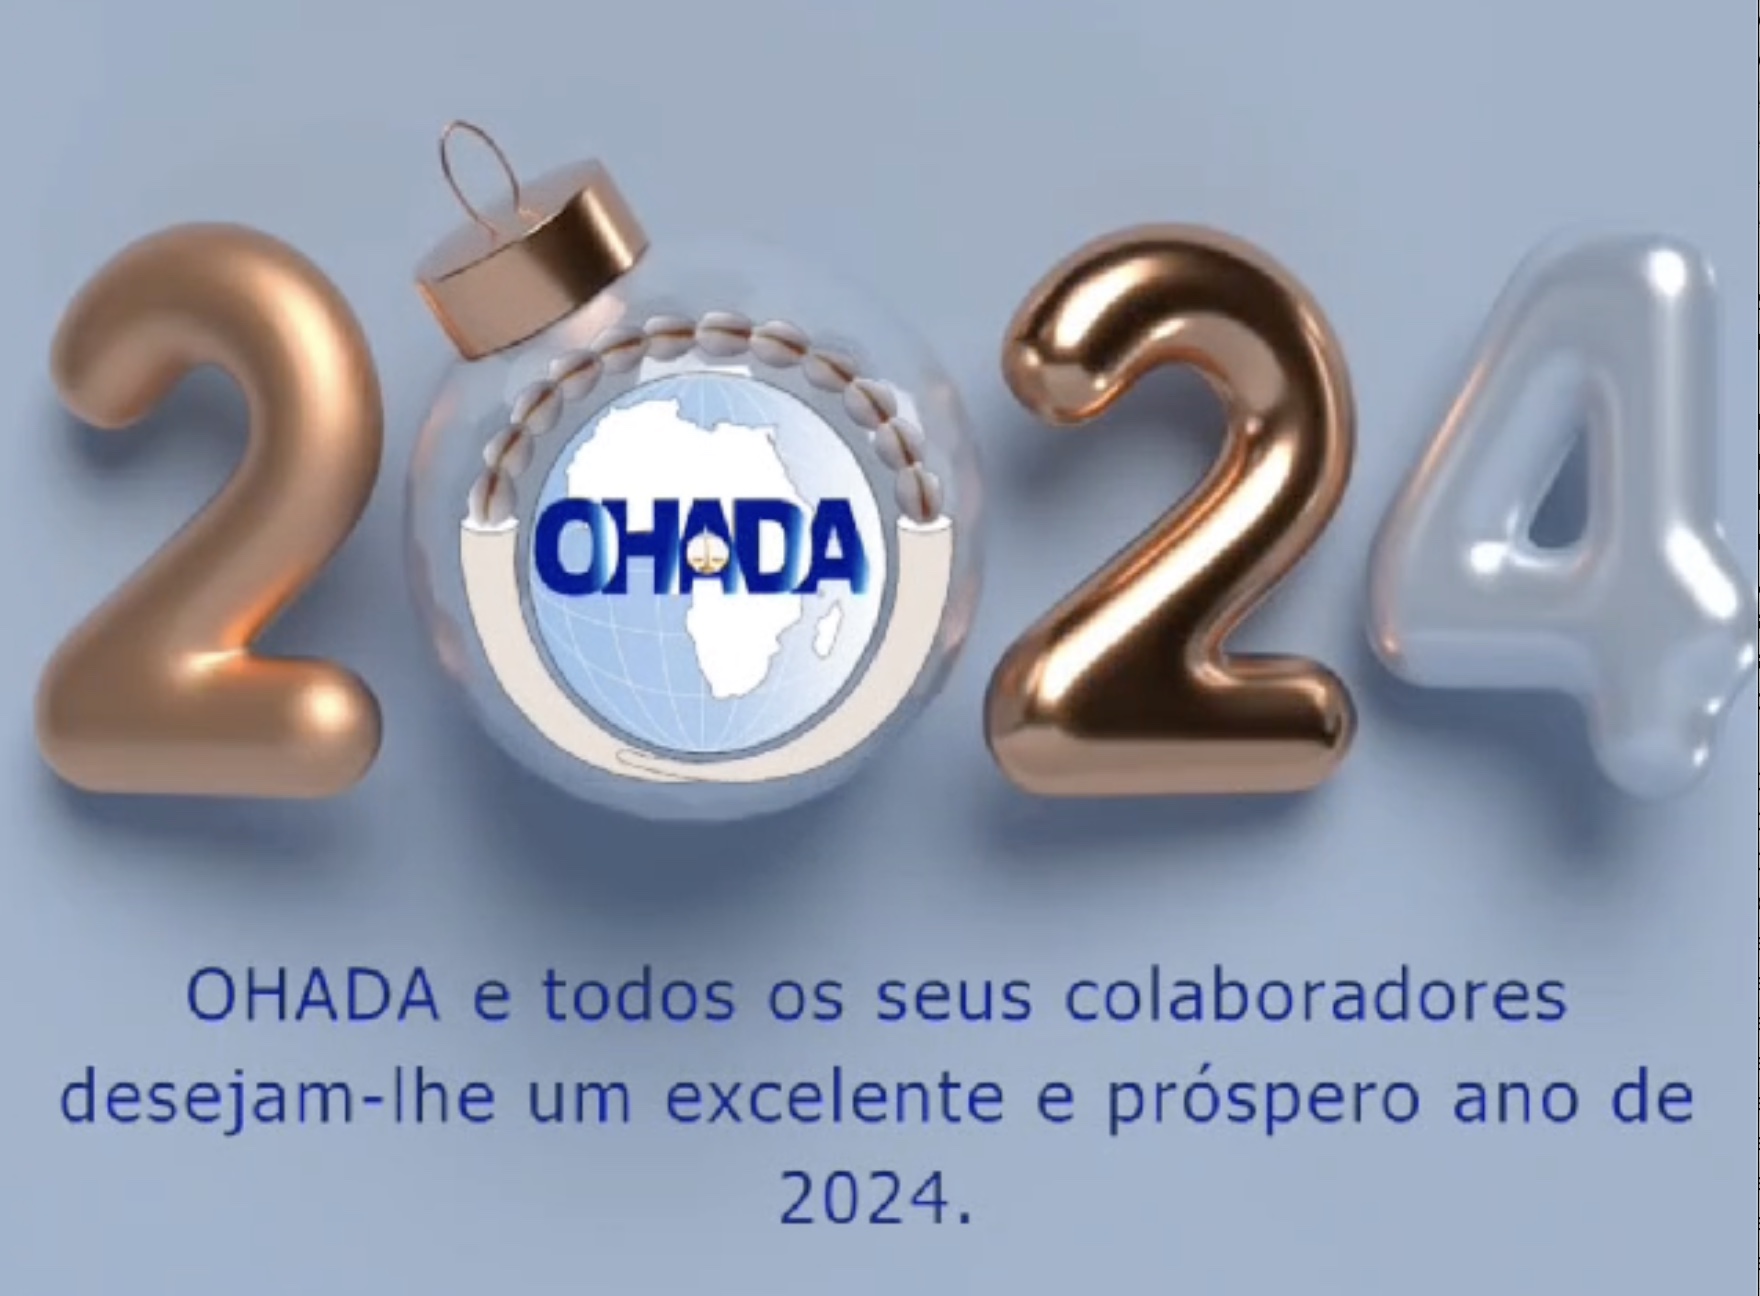 OHADA e todos os seus colaboradores desejam-lhe um excelente e prÒspero ano de 2024